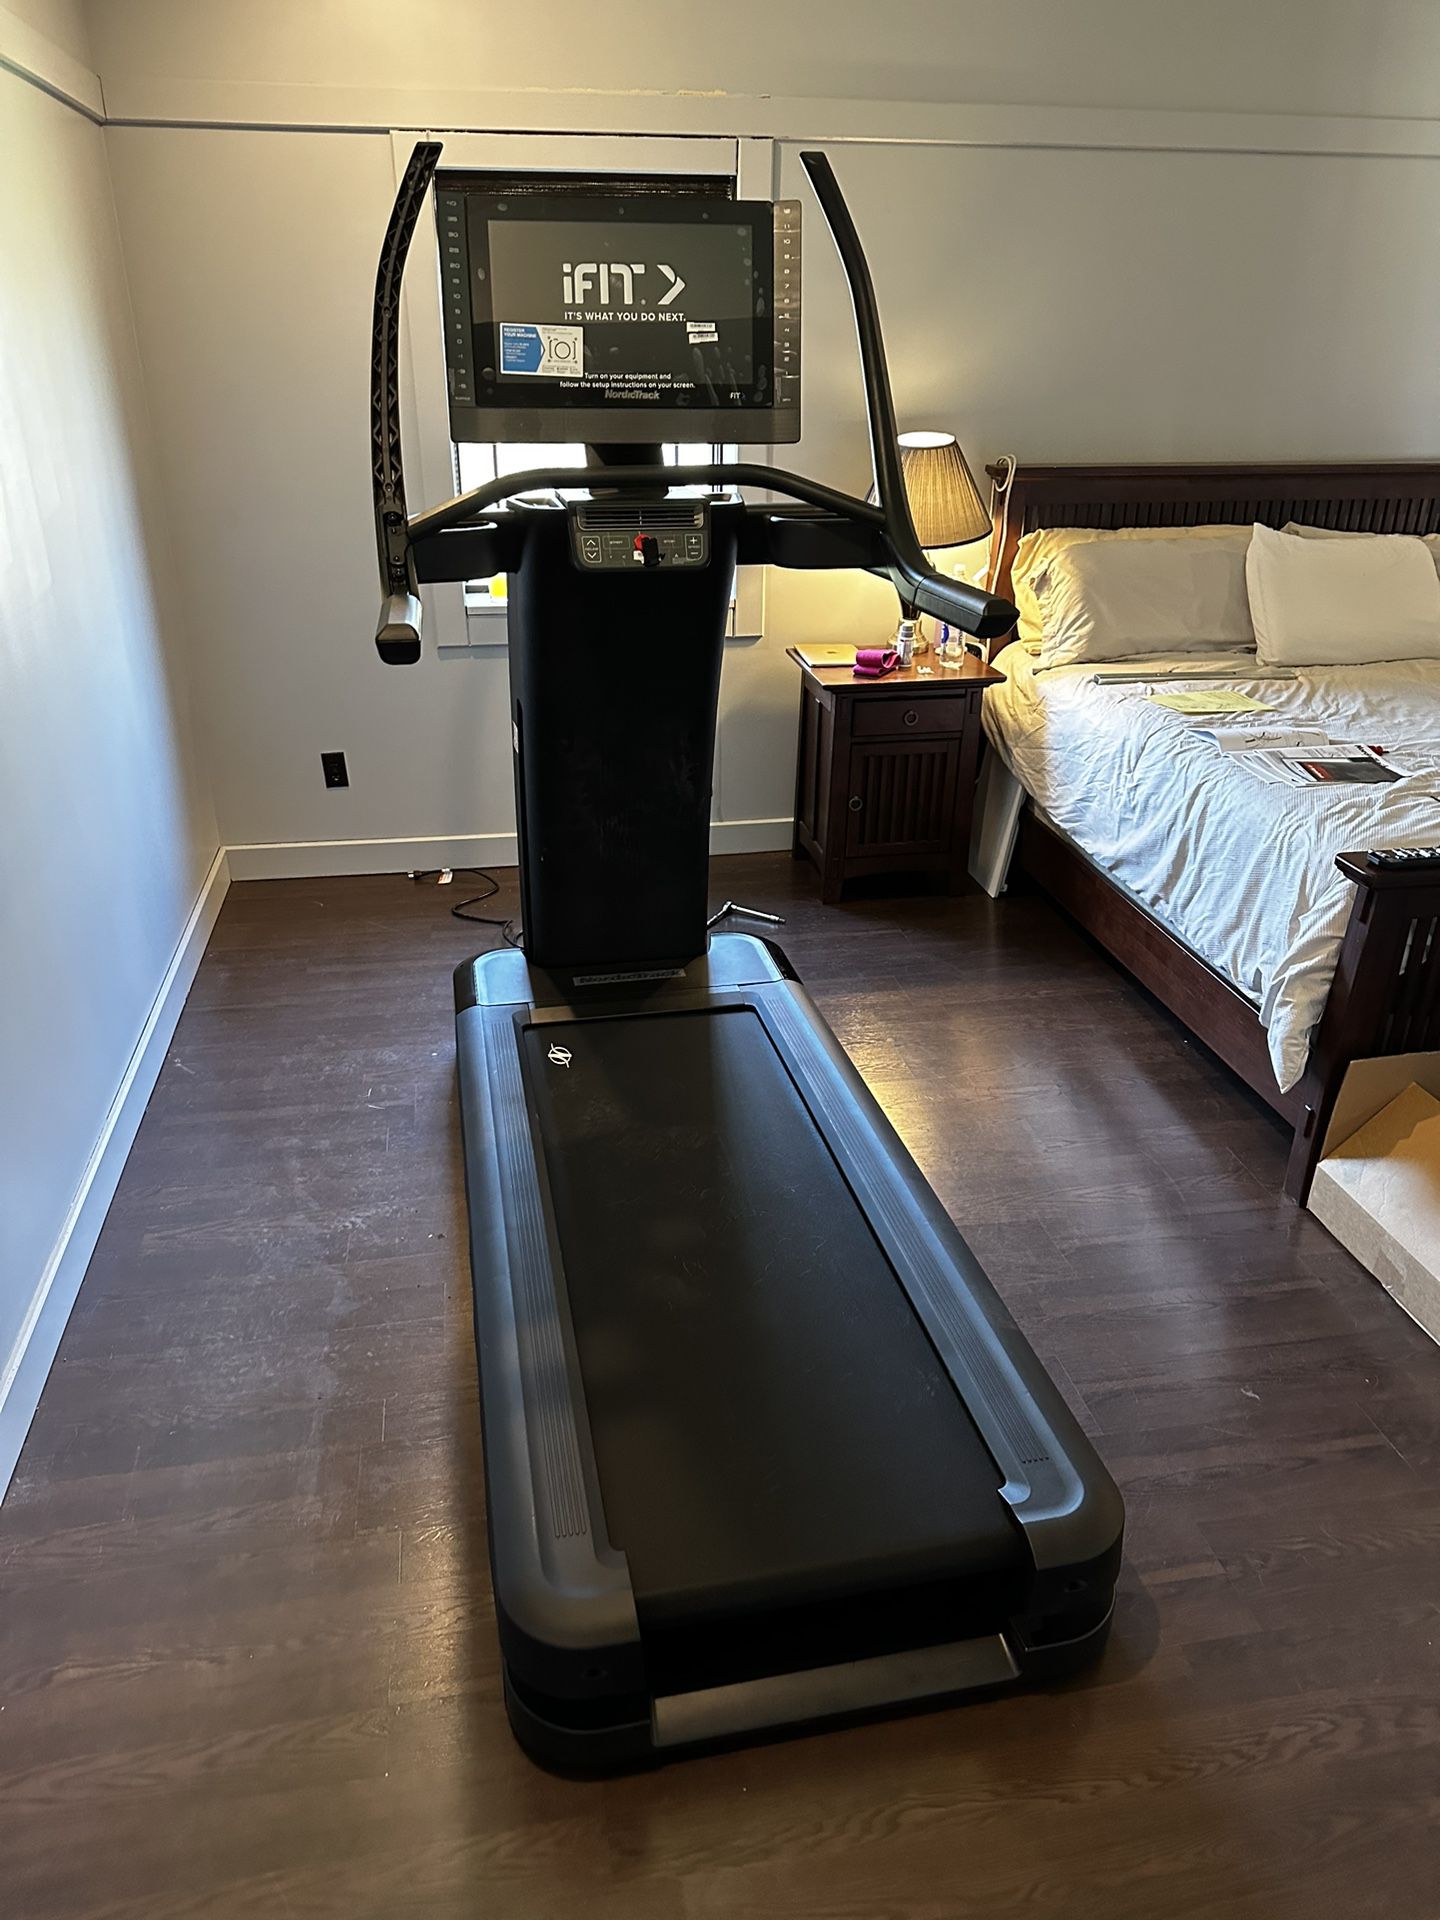 New Treadmill - NordicTrack X22i Read Description